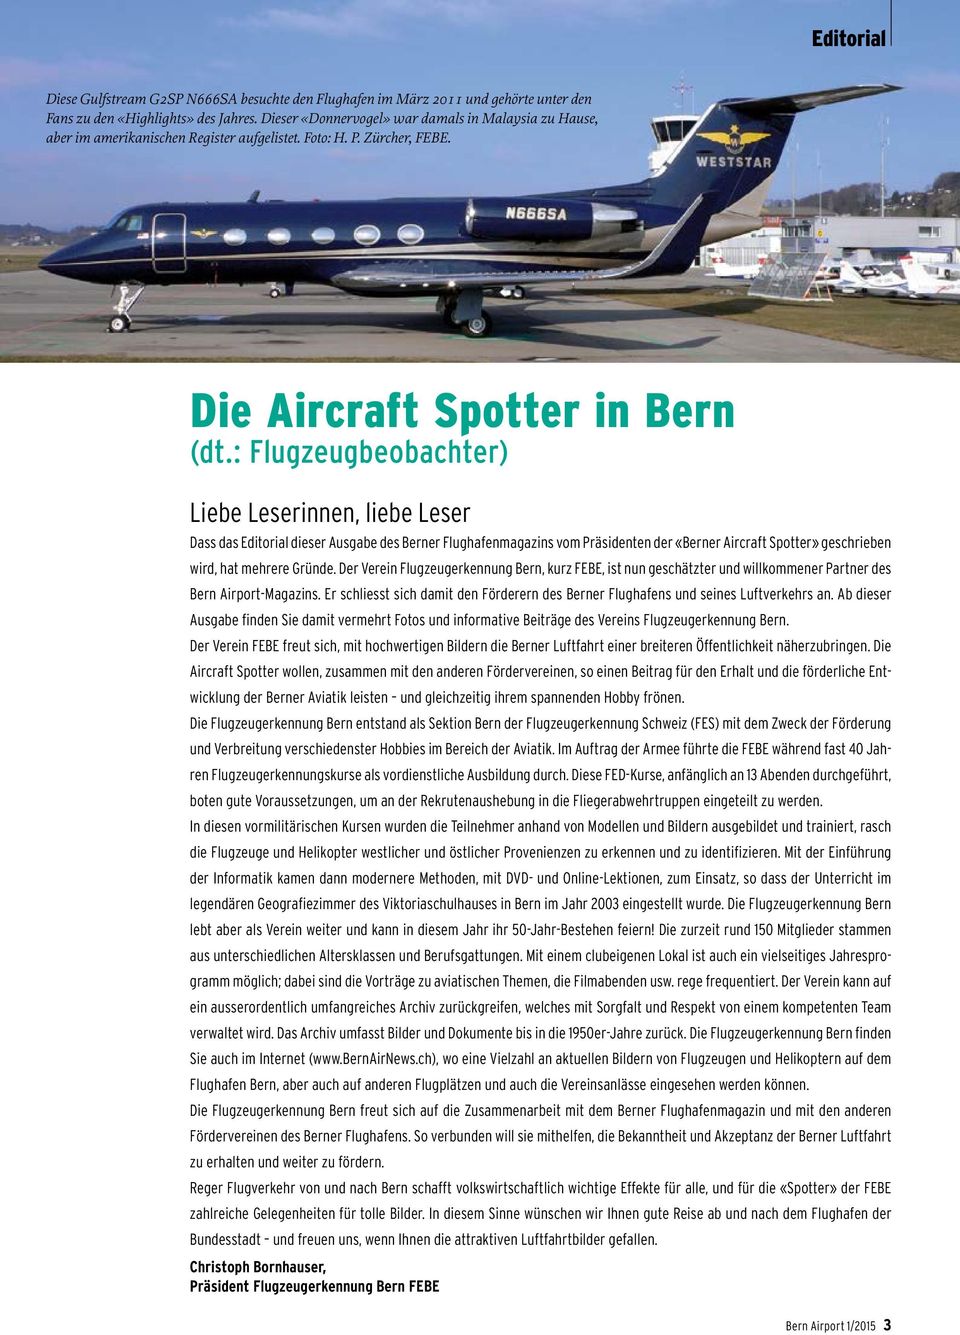 : Flugzeugbeobachter) Liebe Leserinnen, liebe Leser Dass das Editorial dieser Ausgabe des Berner Flughafenmagazins vom Präsidenten der «Berner Aircraft Spotter» geschrieben wird, hat mehrere Gründe.